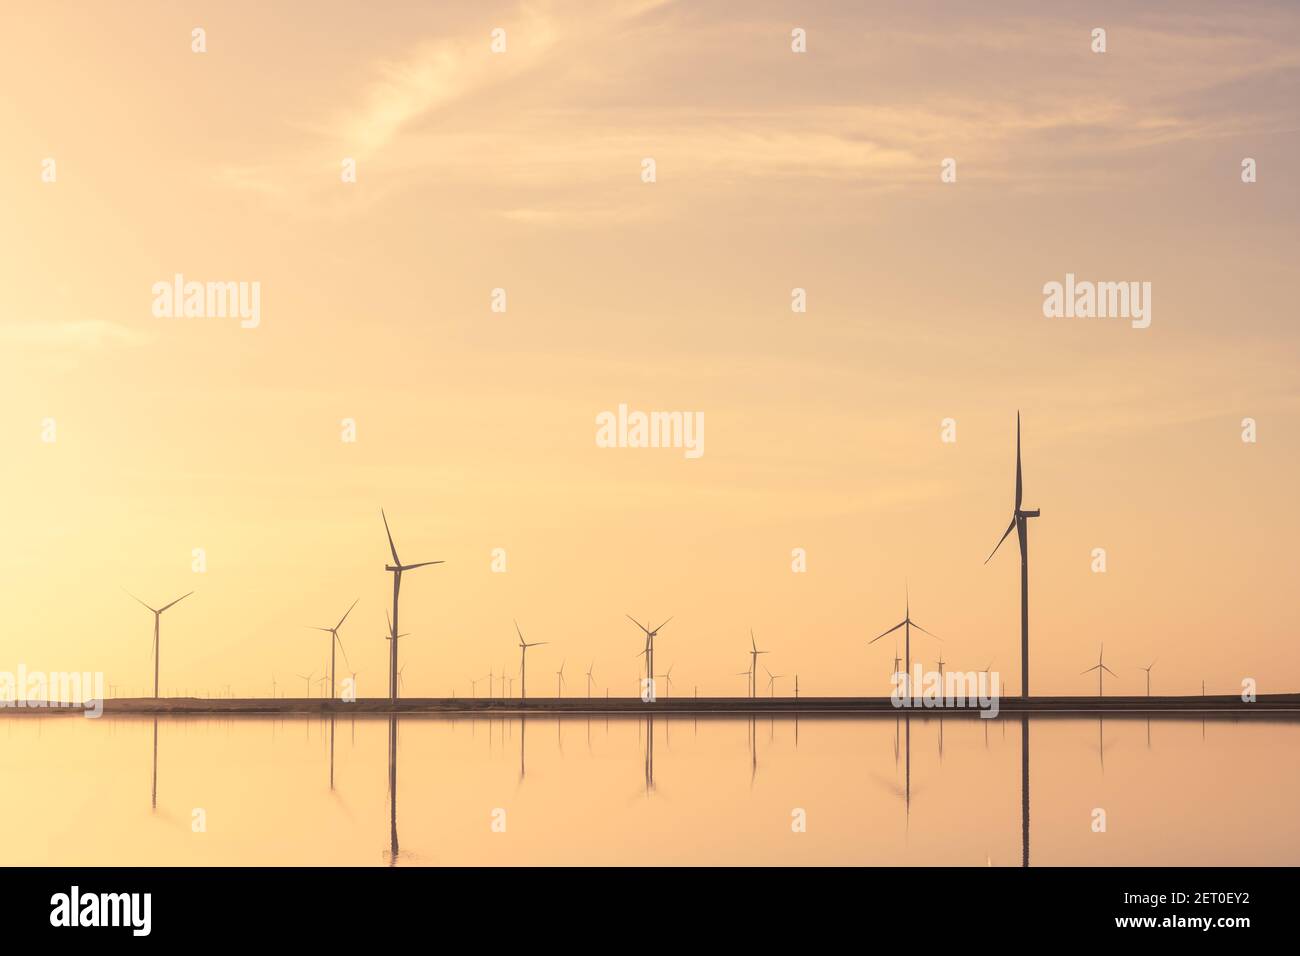 Paysage minimaliste tranquille avec des rangées d'éoliennes offshore, miroir dans l'eau de mer. Photographie de paysage industriel Banque D'Images